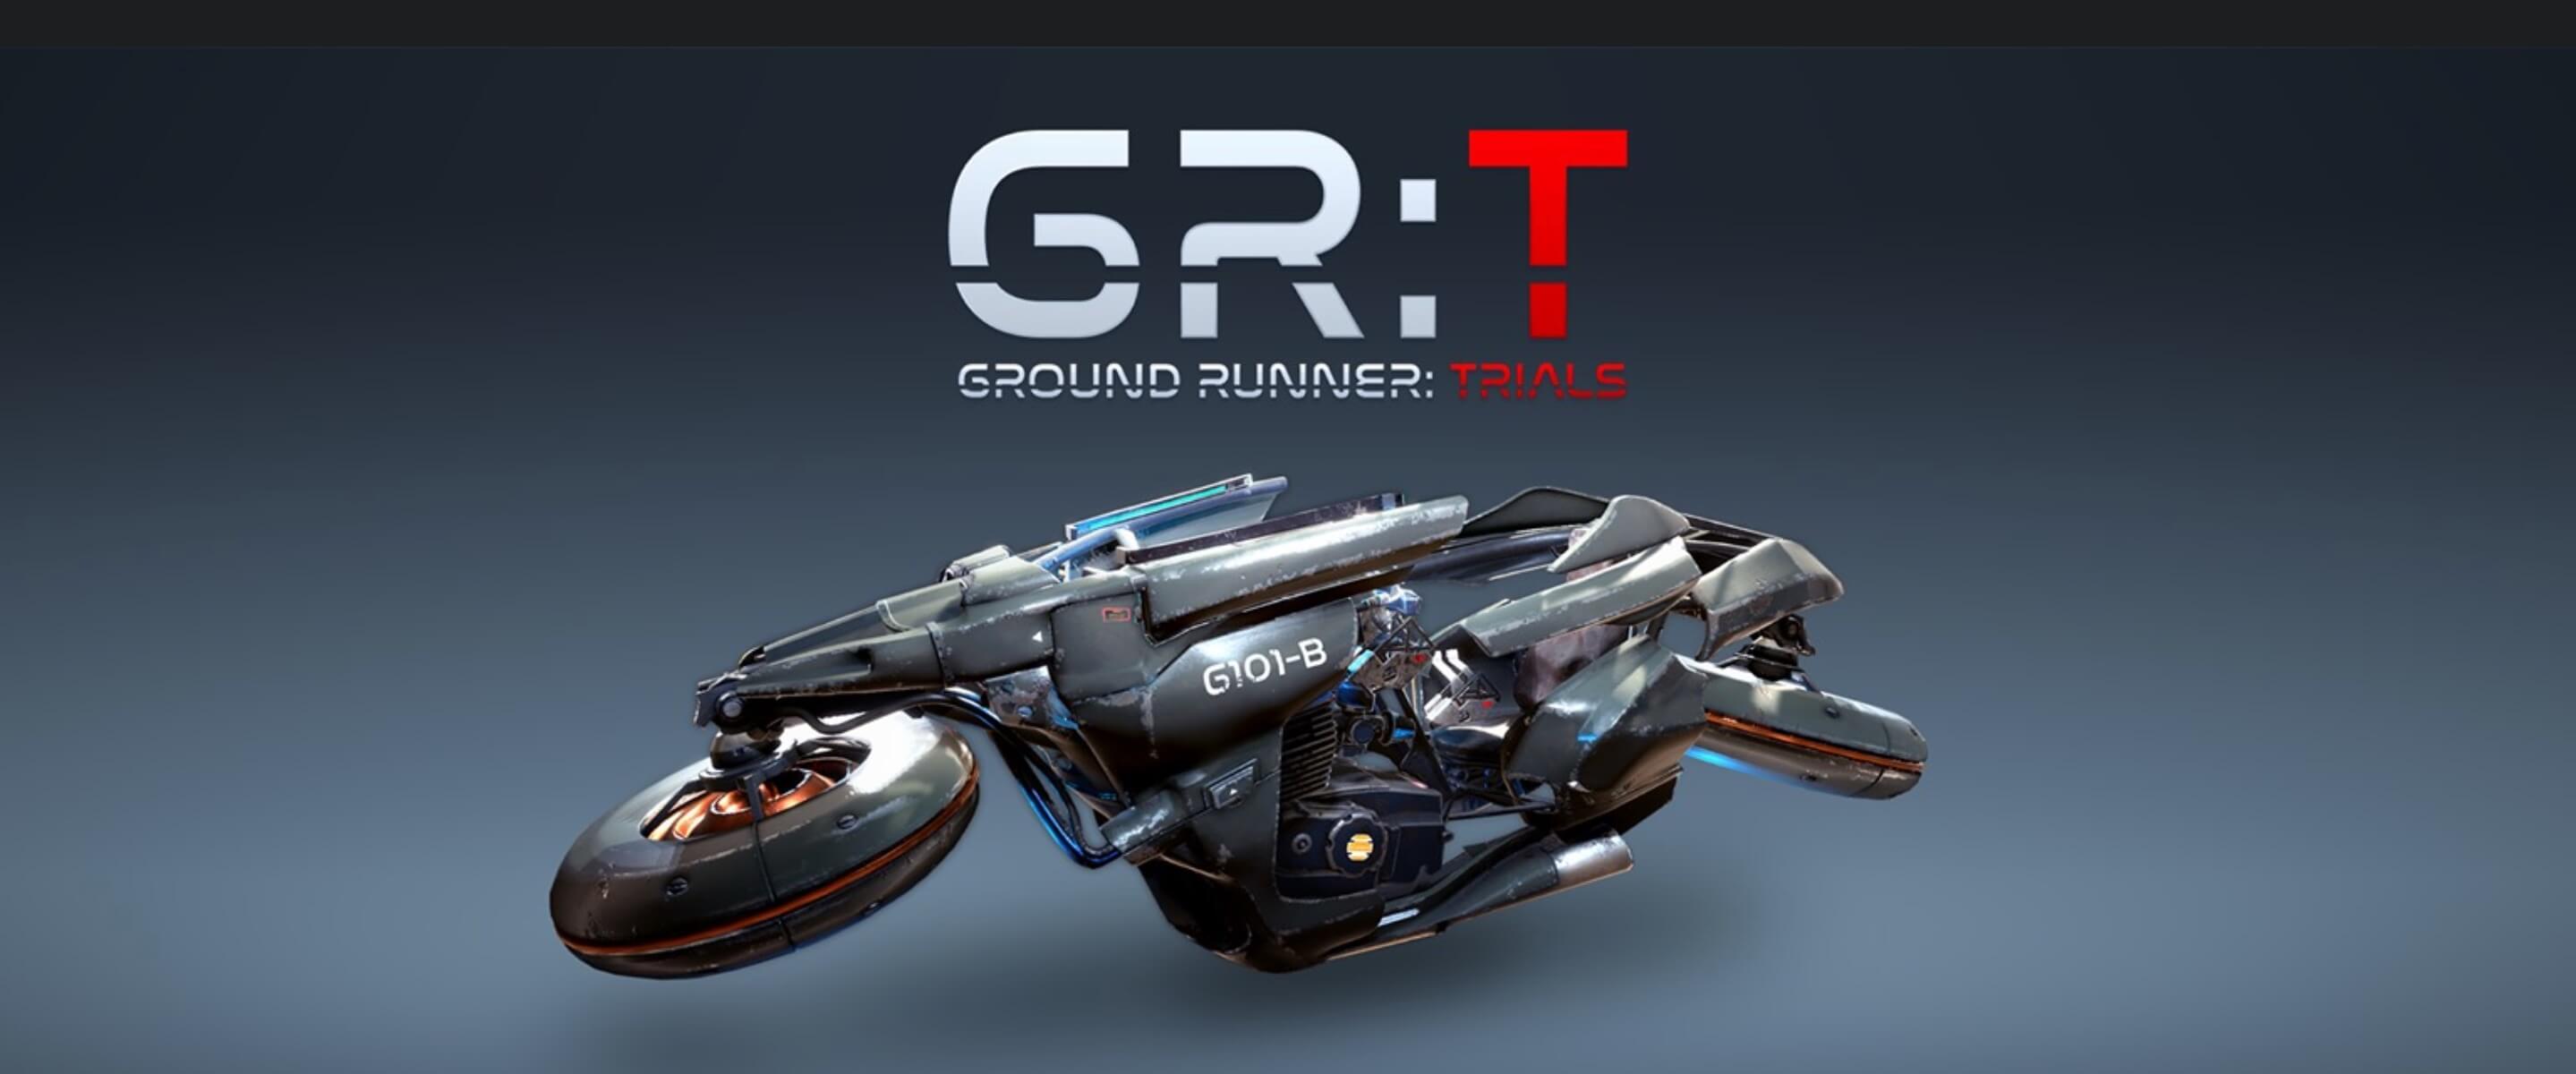 Ground Runner: Trials banner